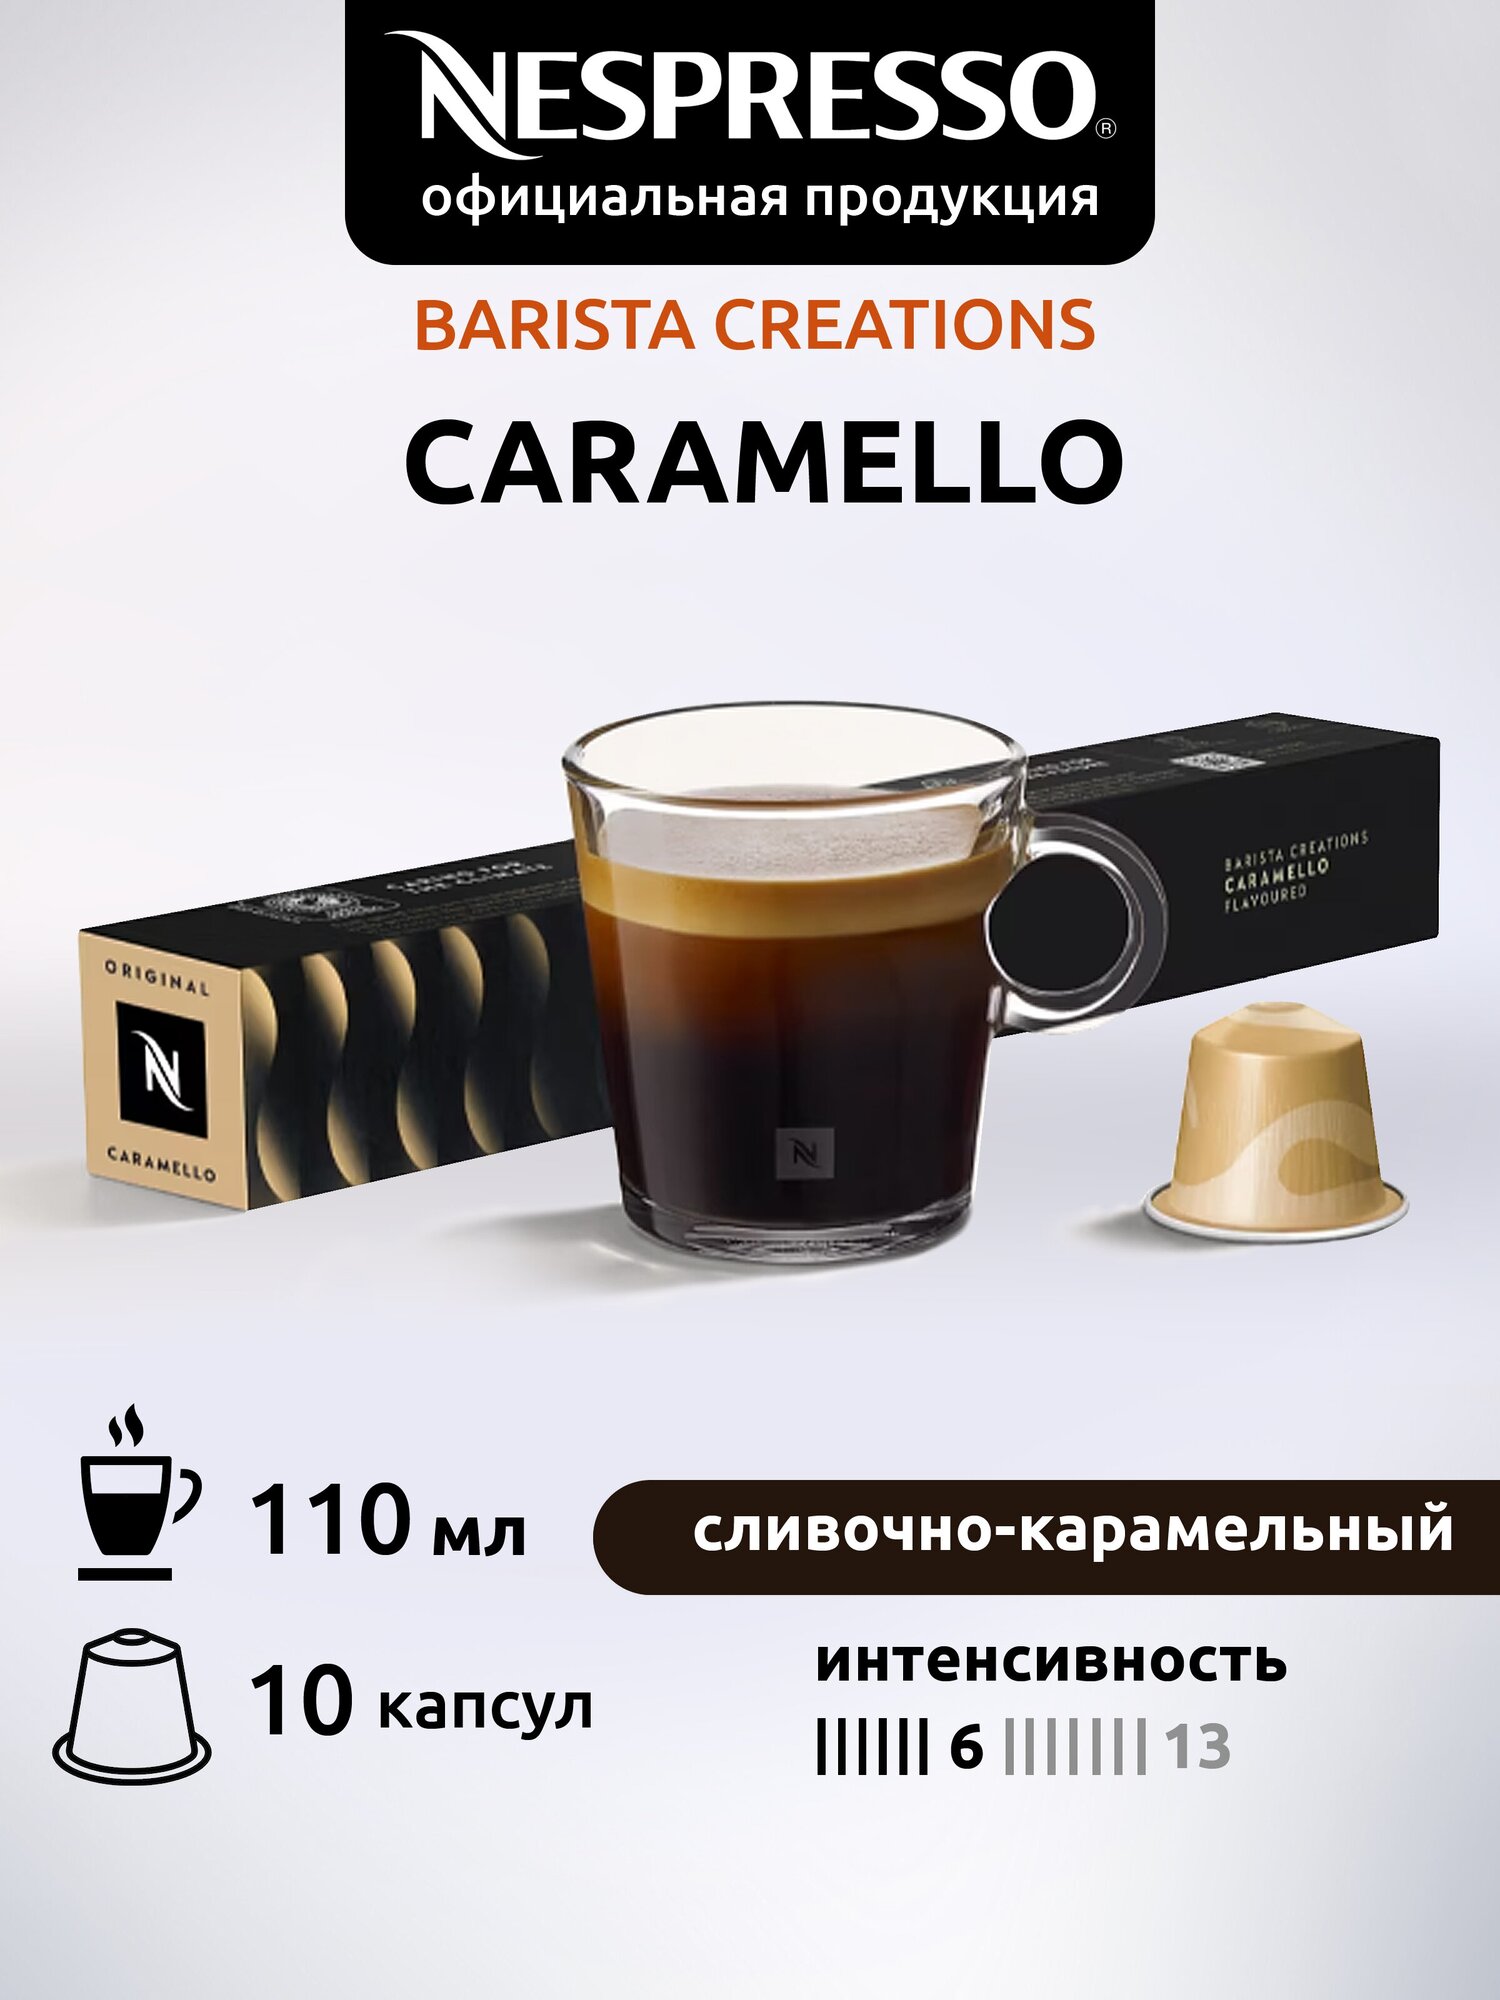 Кофе в капсулах Nespresso CARAMELLO, натуральный, молотый кофе в капсулах, для капсульных кофемашин, неспрессо , 10шт